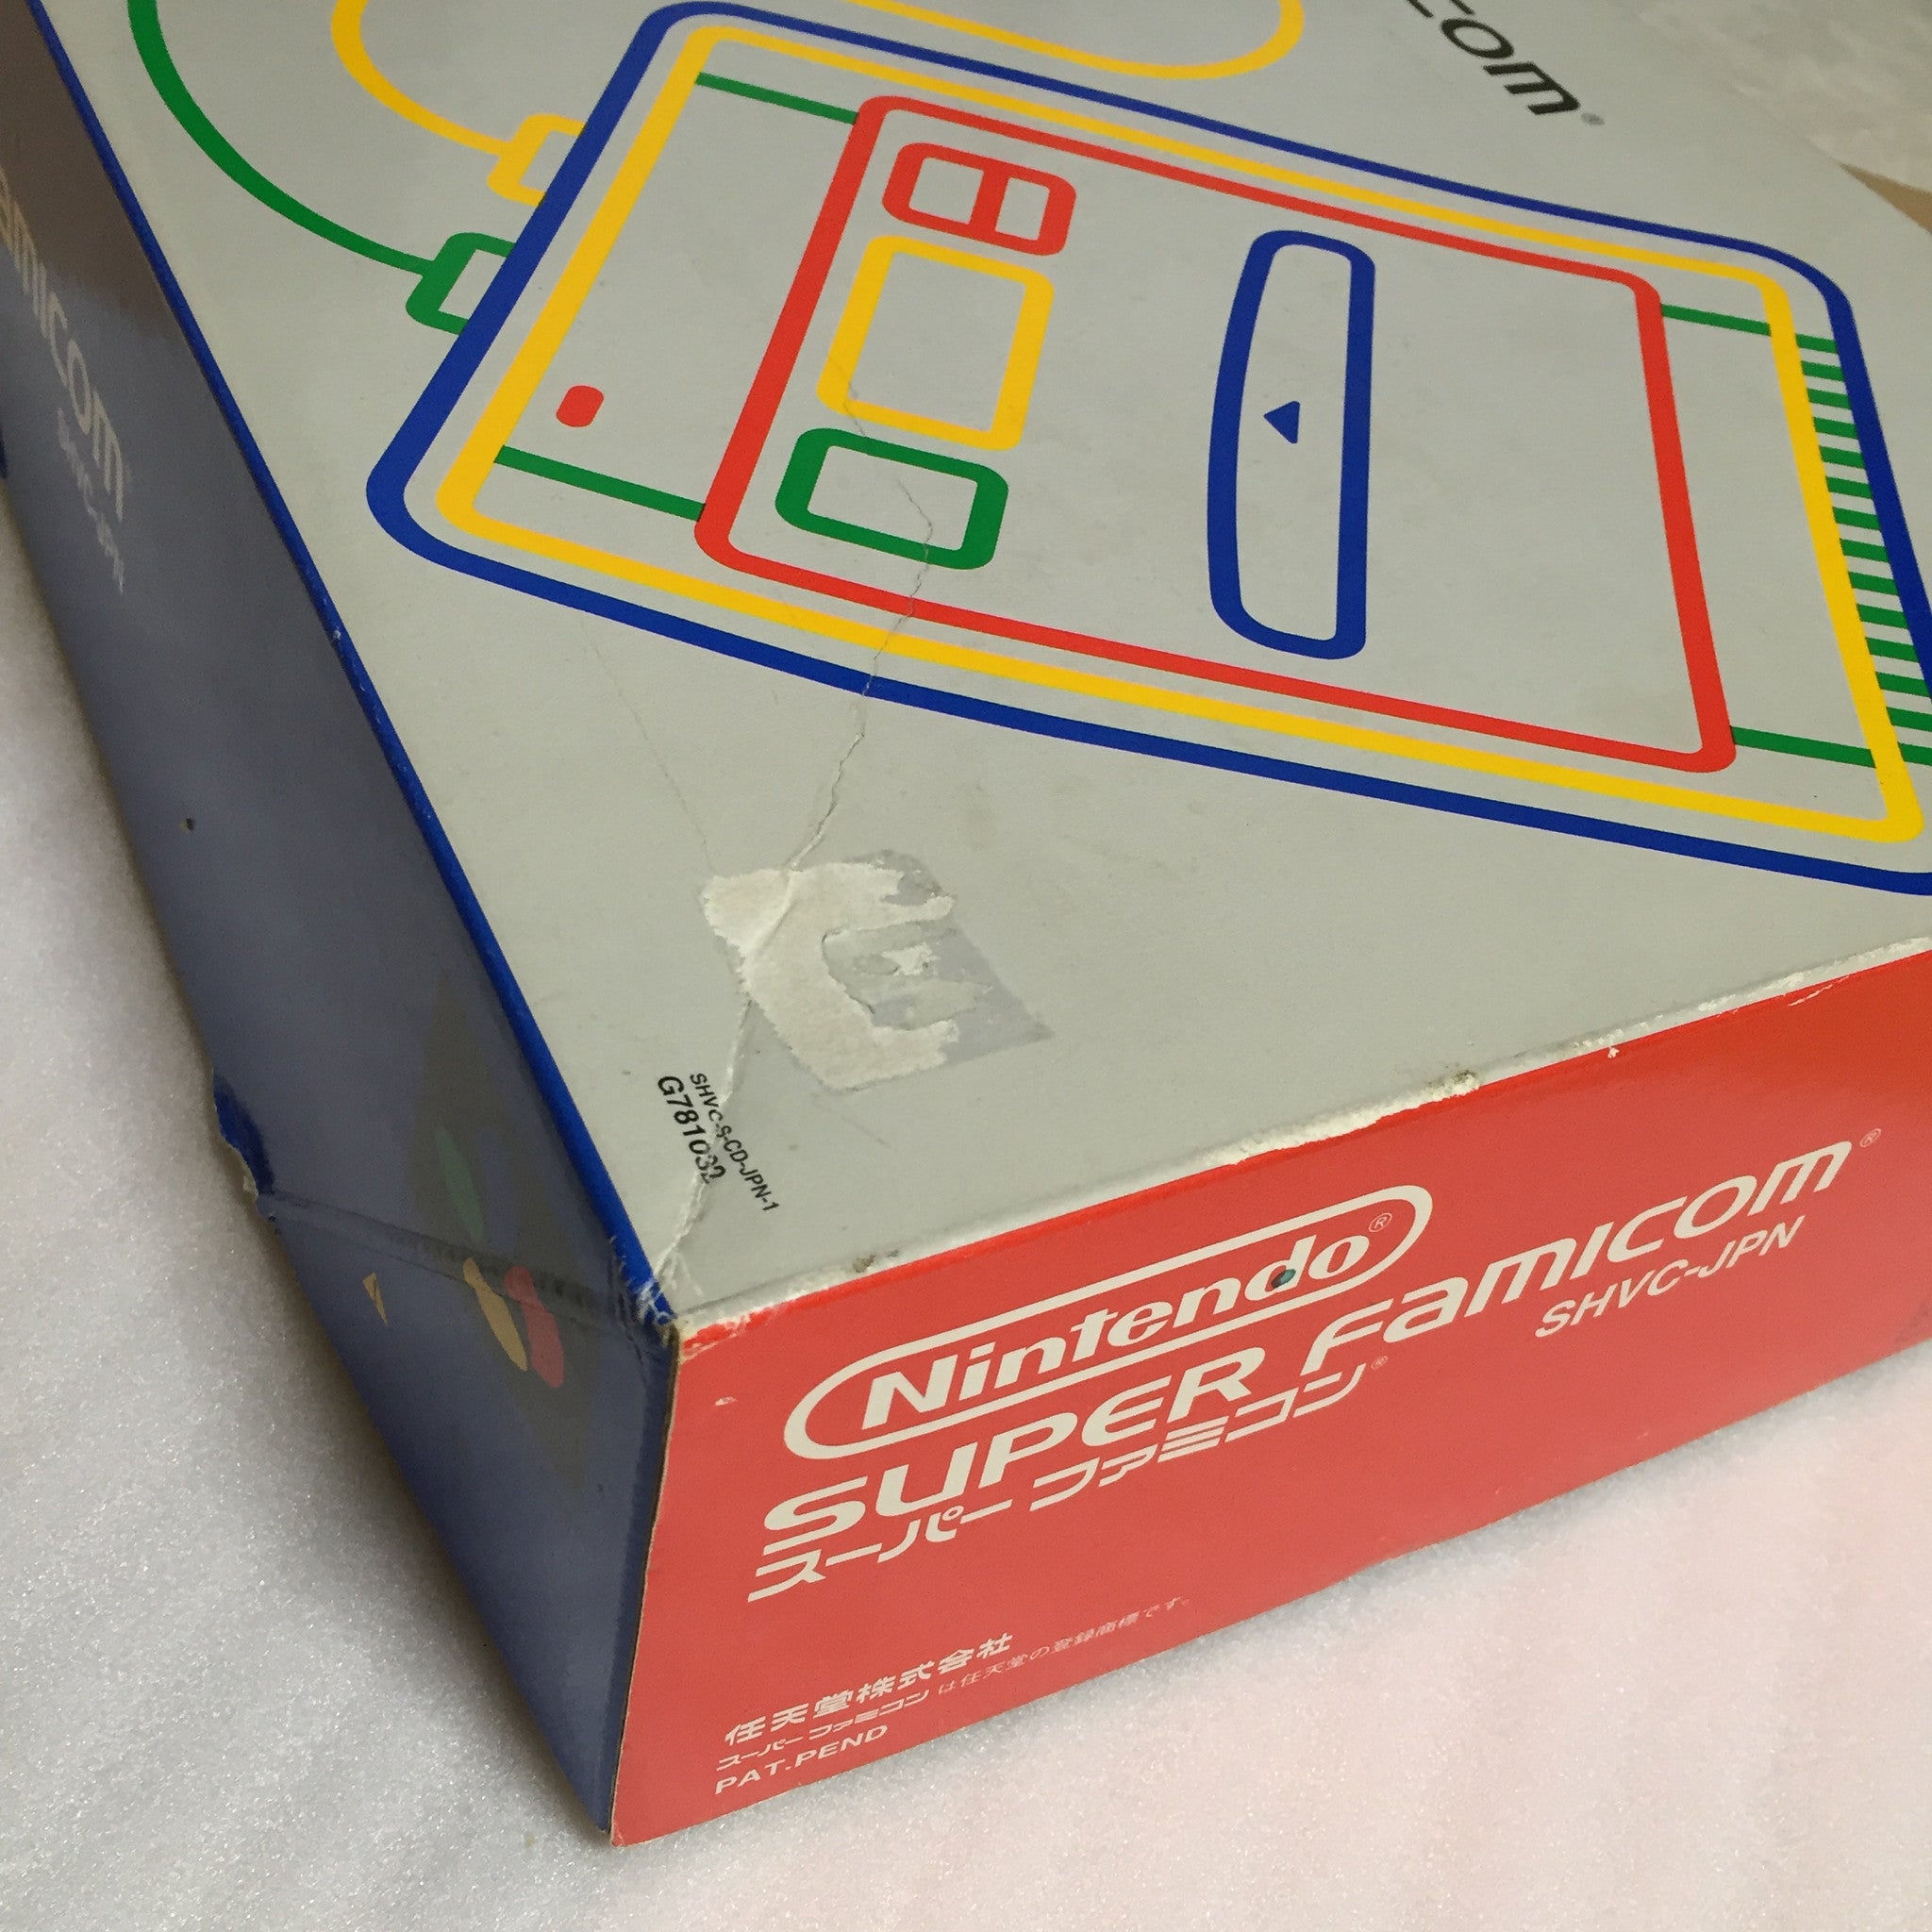 1 CHIP Super Famicom system with 2 games - RetroAsia